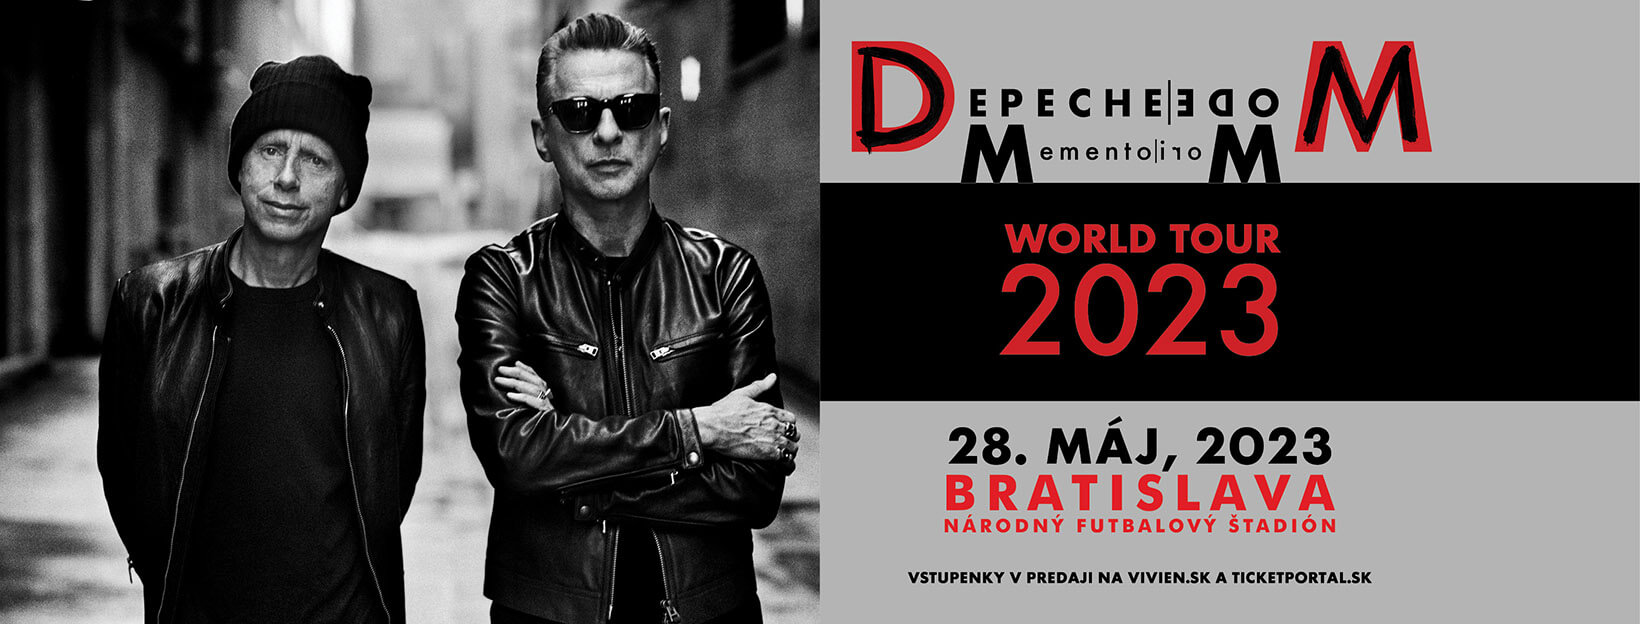 Skupina Depeche Mode po piatich rokoch ohlásila celosvetové turné. V Bratislave sa predstaví už budúci rok